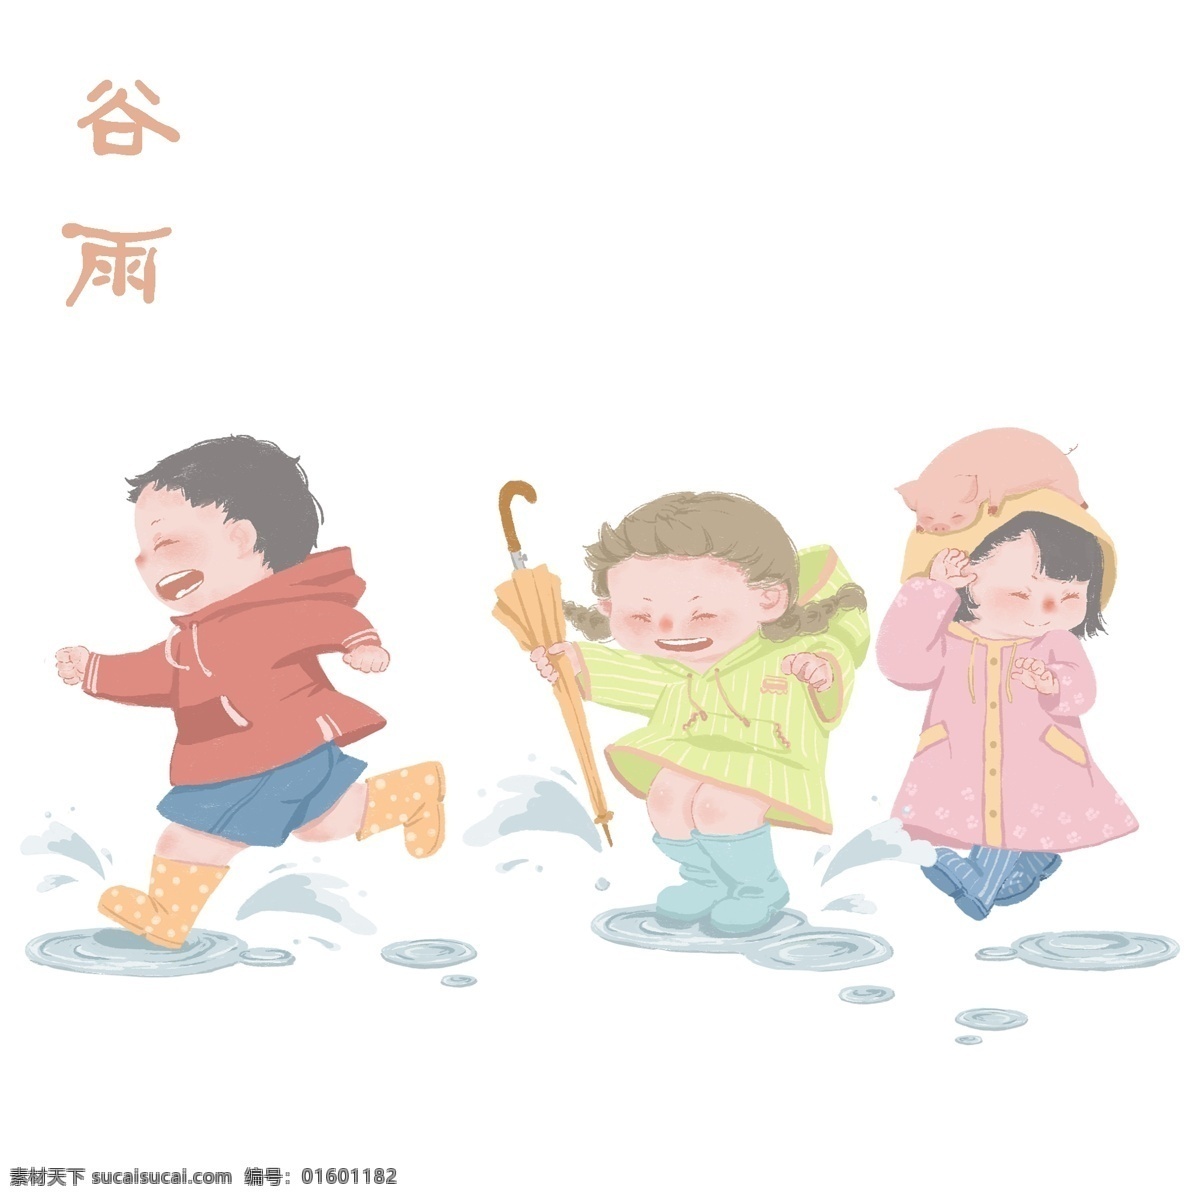 2019 年 手绘 中国 风 节气 谷雨 中国风 年画 蓝色 紫色 黄色 24节气 小男孩儿 小女孩儿 穿雨衣 下雨 打雨伞 雨鞋